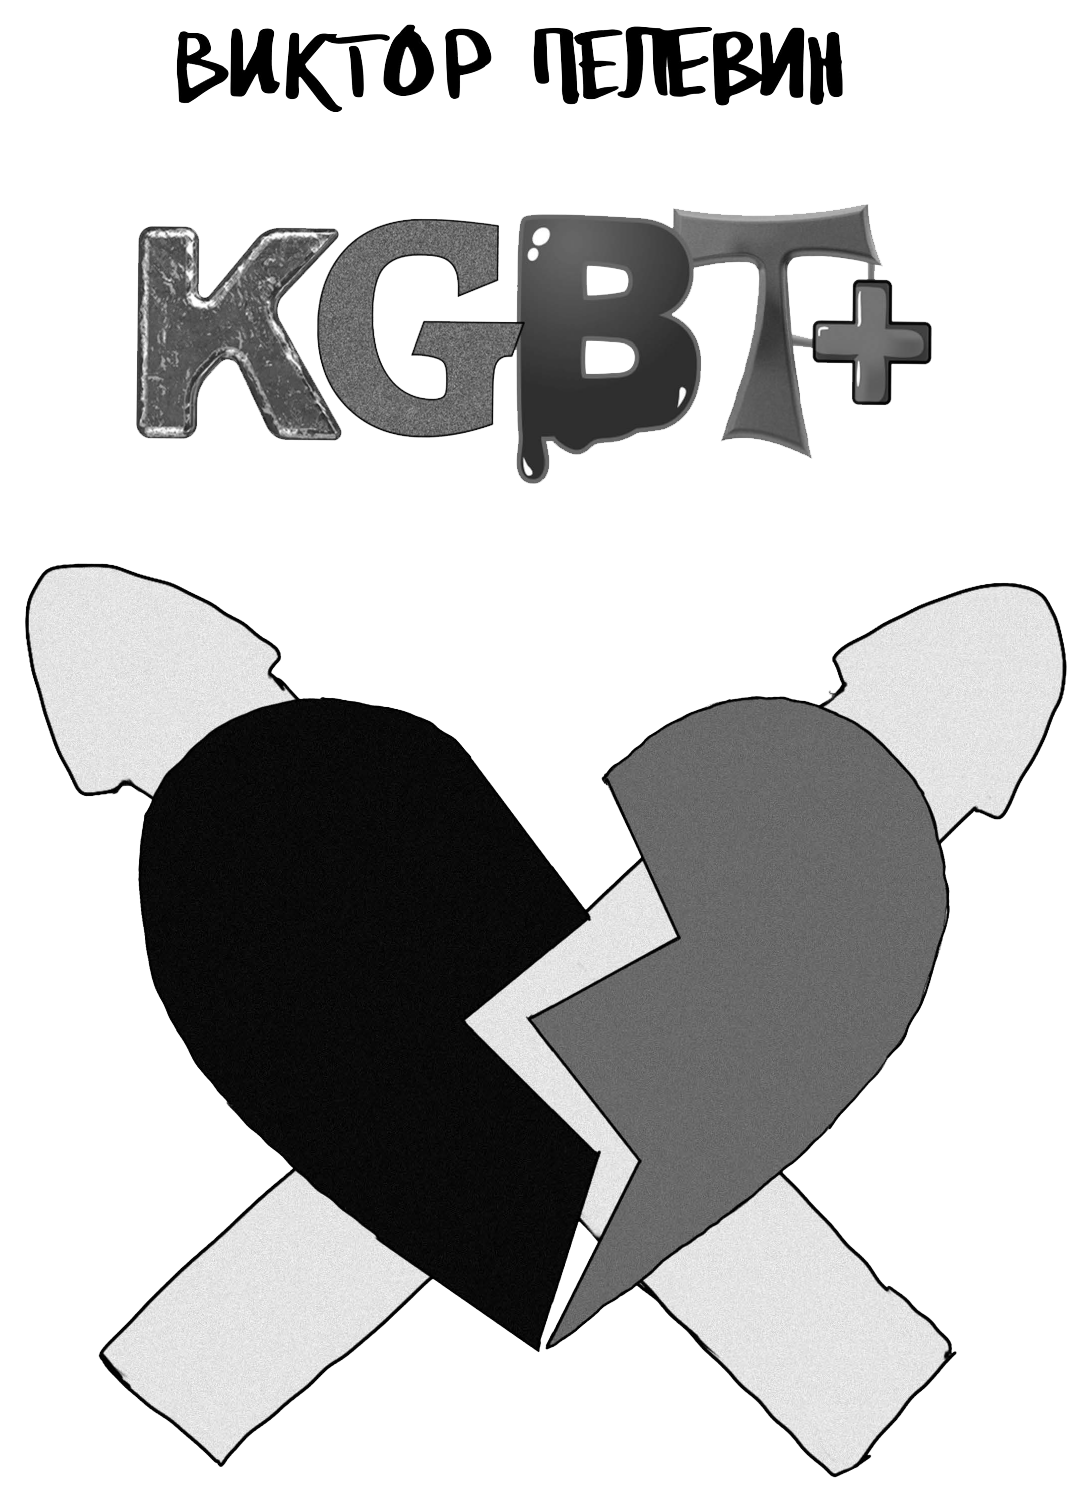 KGBT+ ( КГБТ+)